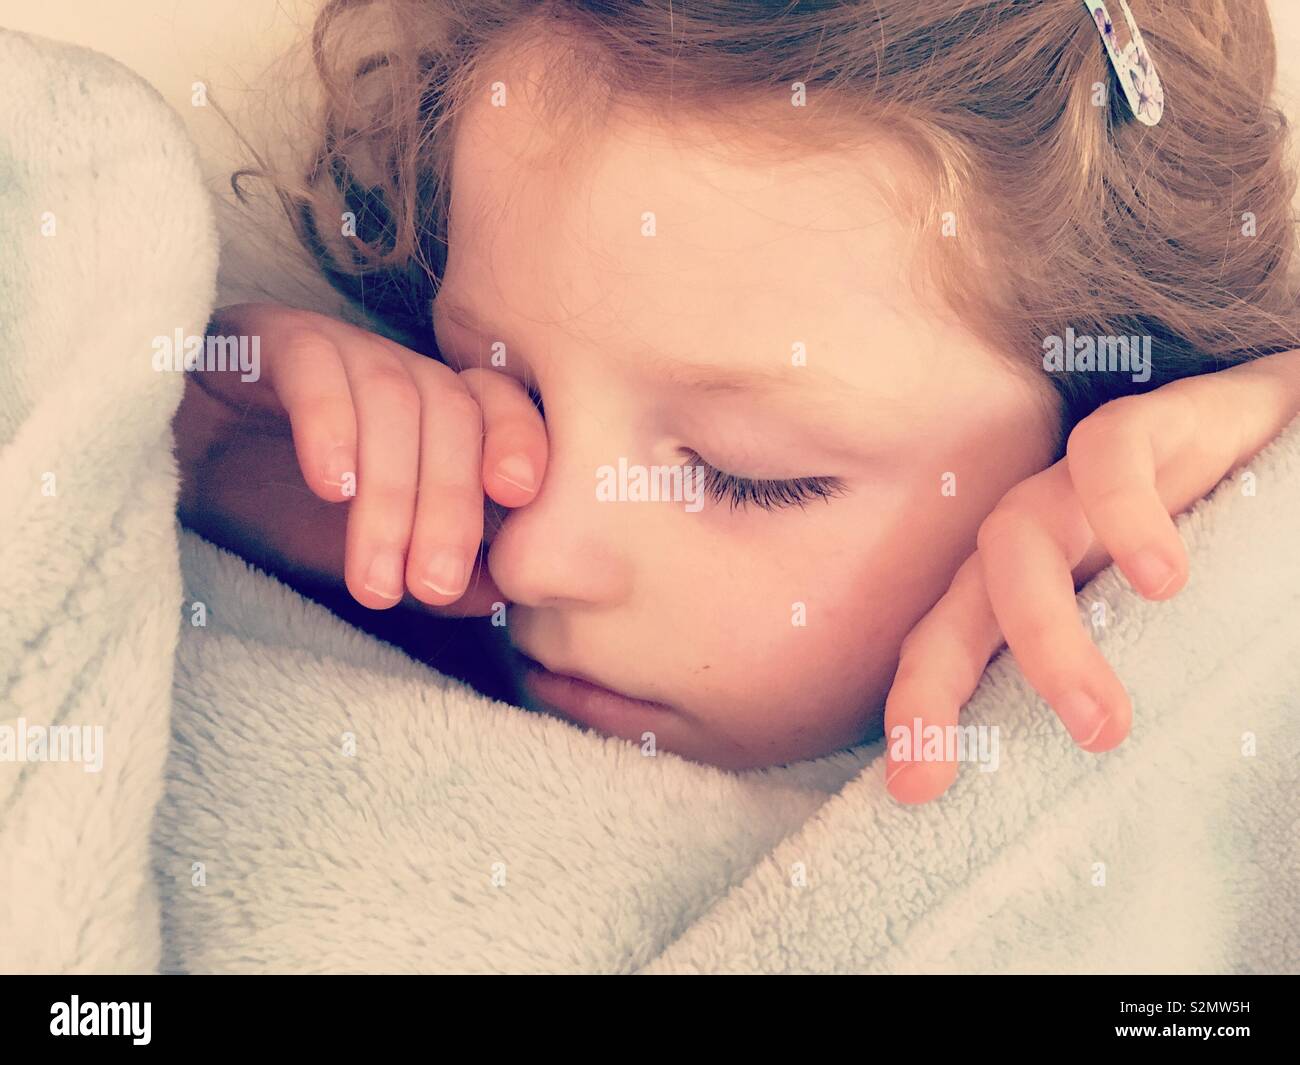 Schlafende Kind/jungen Kind 4 Jahre/4 Jahre alten schlafend in tiefen Schlaf im Alter. Sie erholt sich nach einer Magenverstimmung. und fehlende Tage Schule Stockfoto